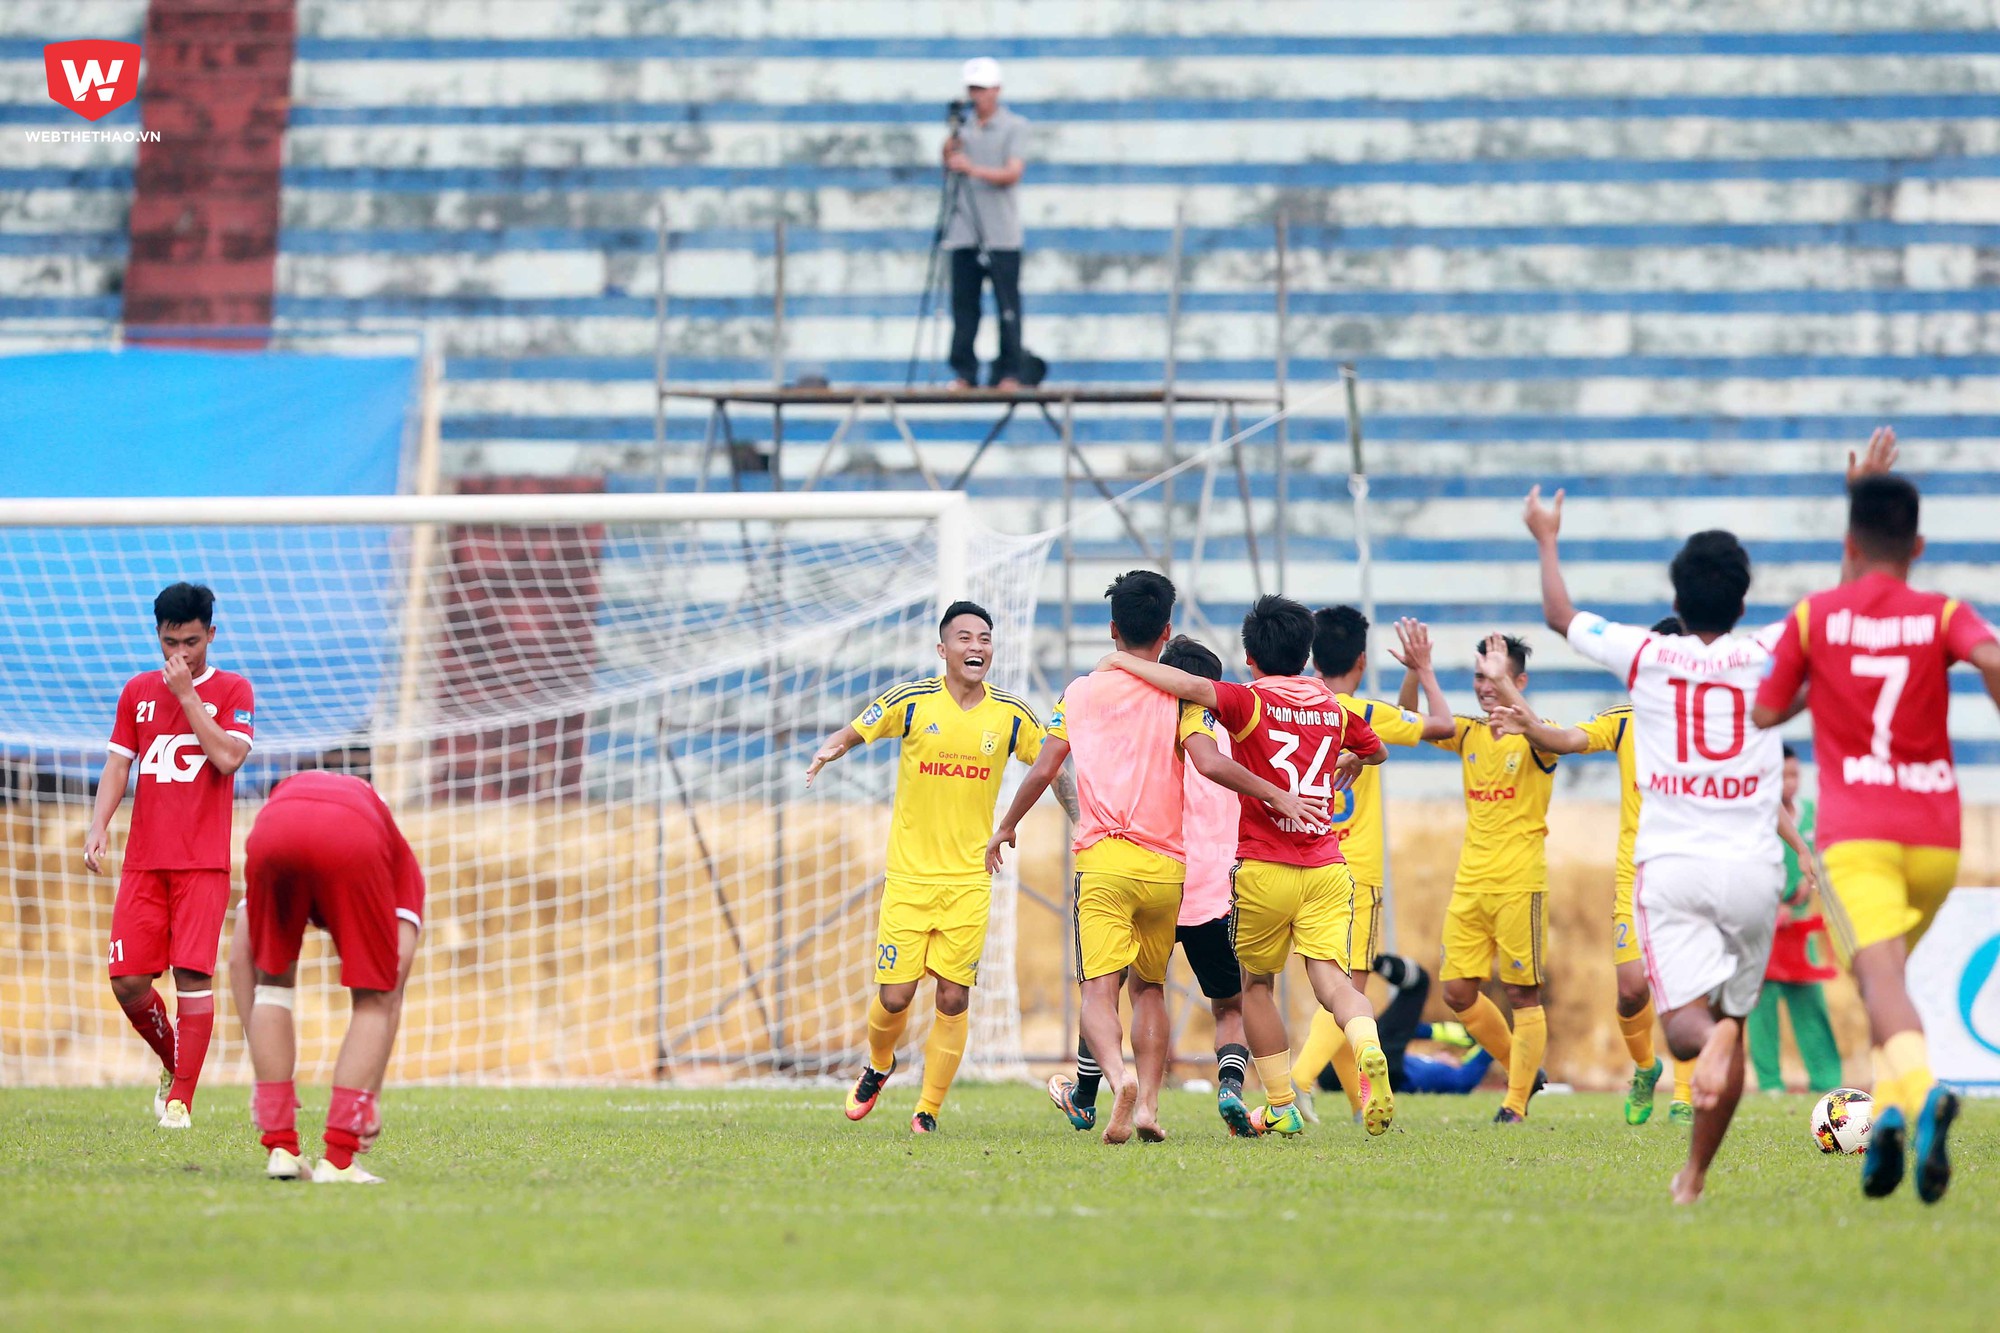 Các càu thủ cùng BHL Nam Định đã vỡ òa trong cảm xúc hạnh phúc tột độ khi tiếng còi kết thúc trận đấu vang lên.